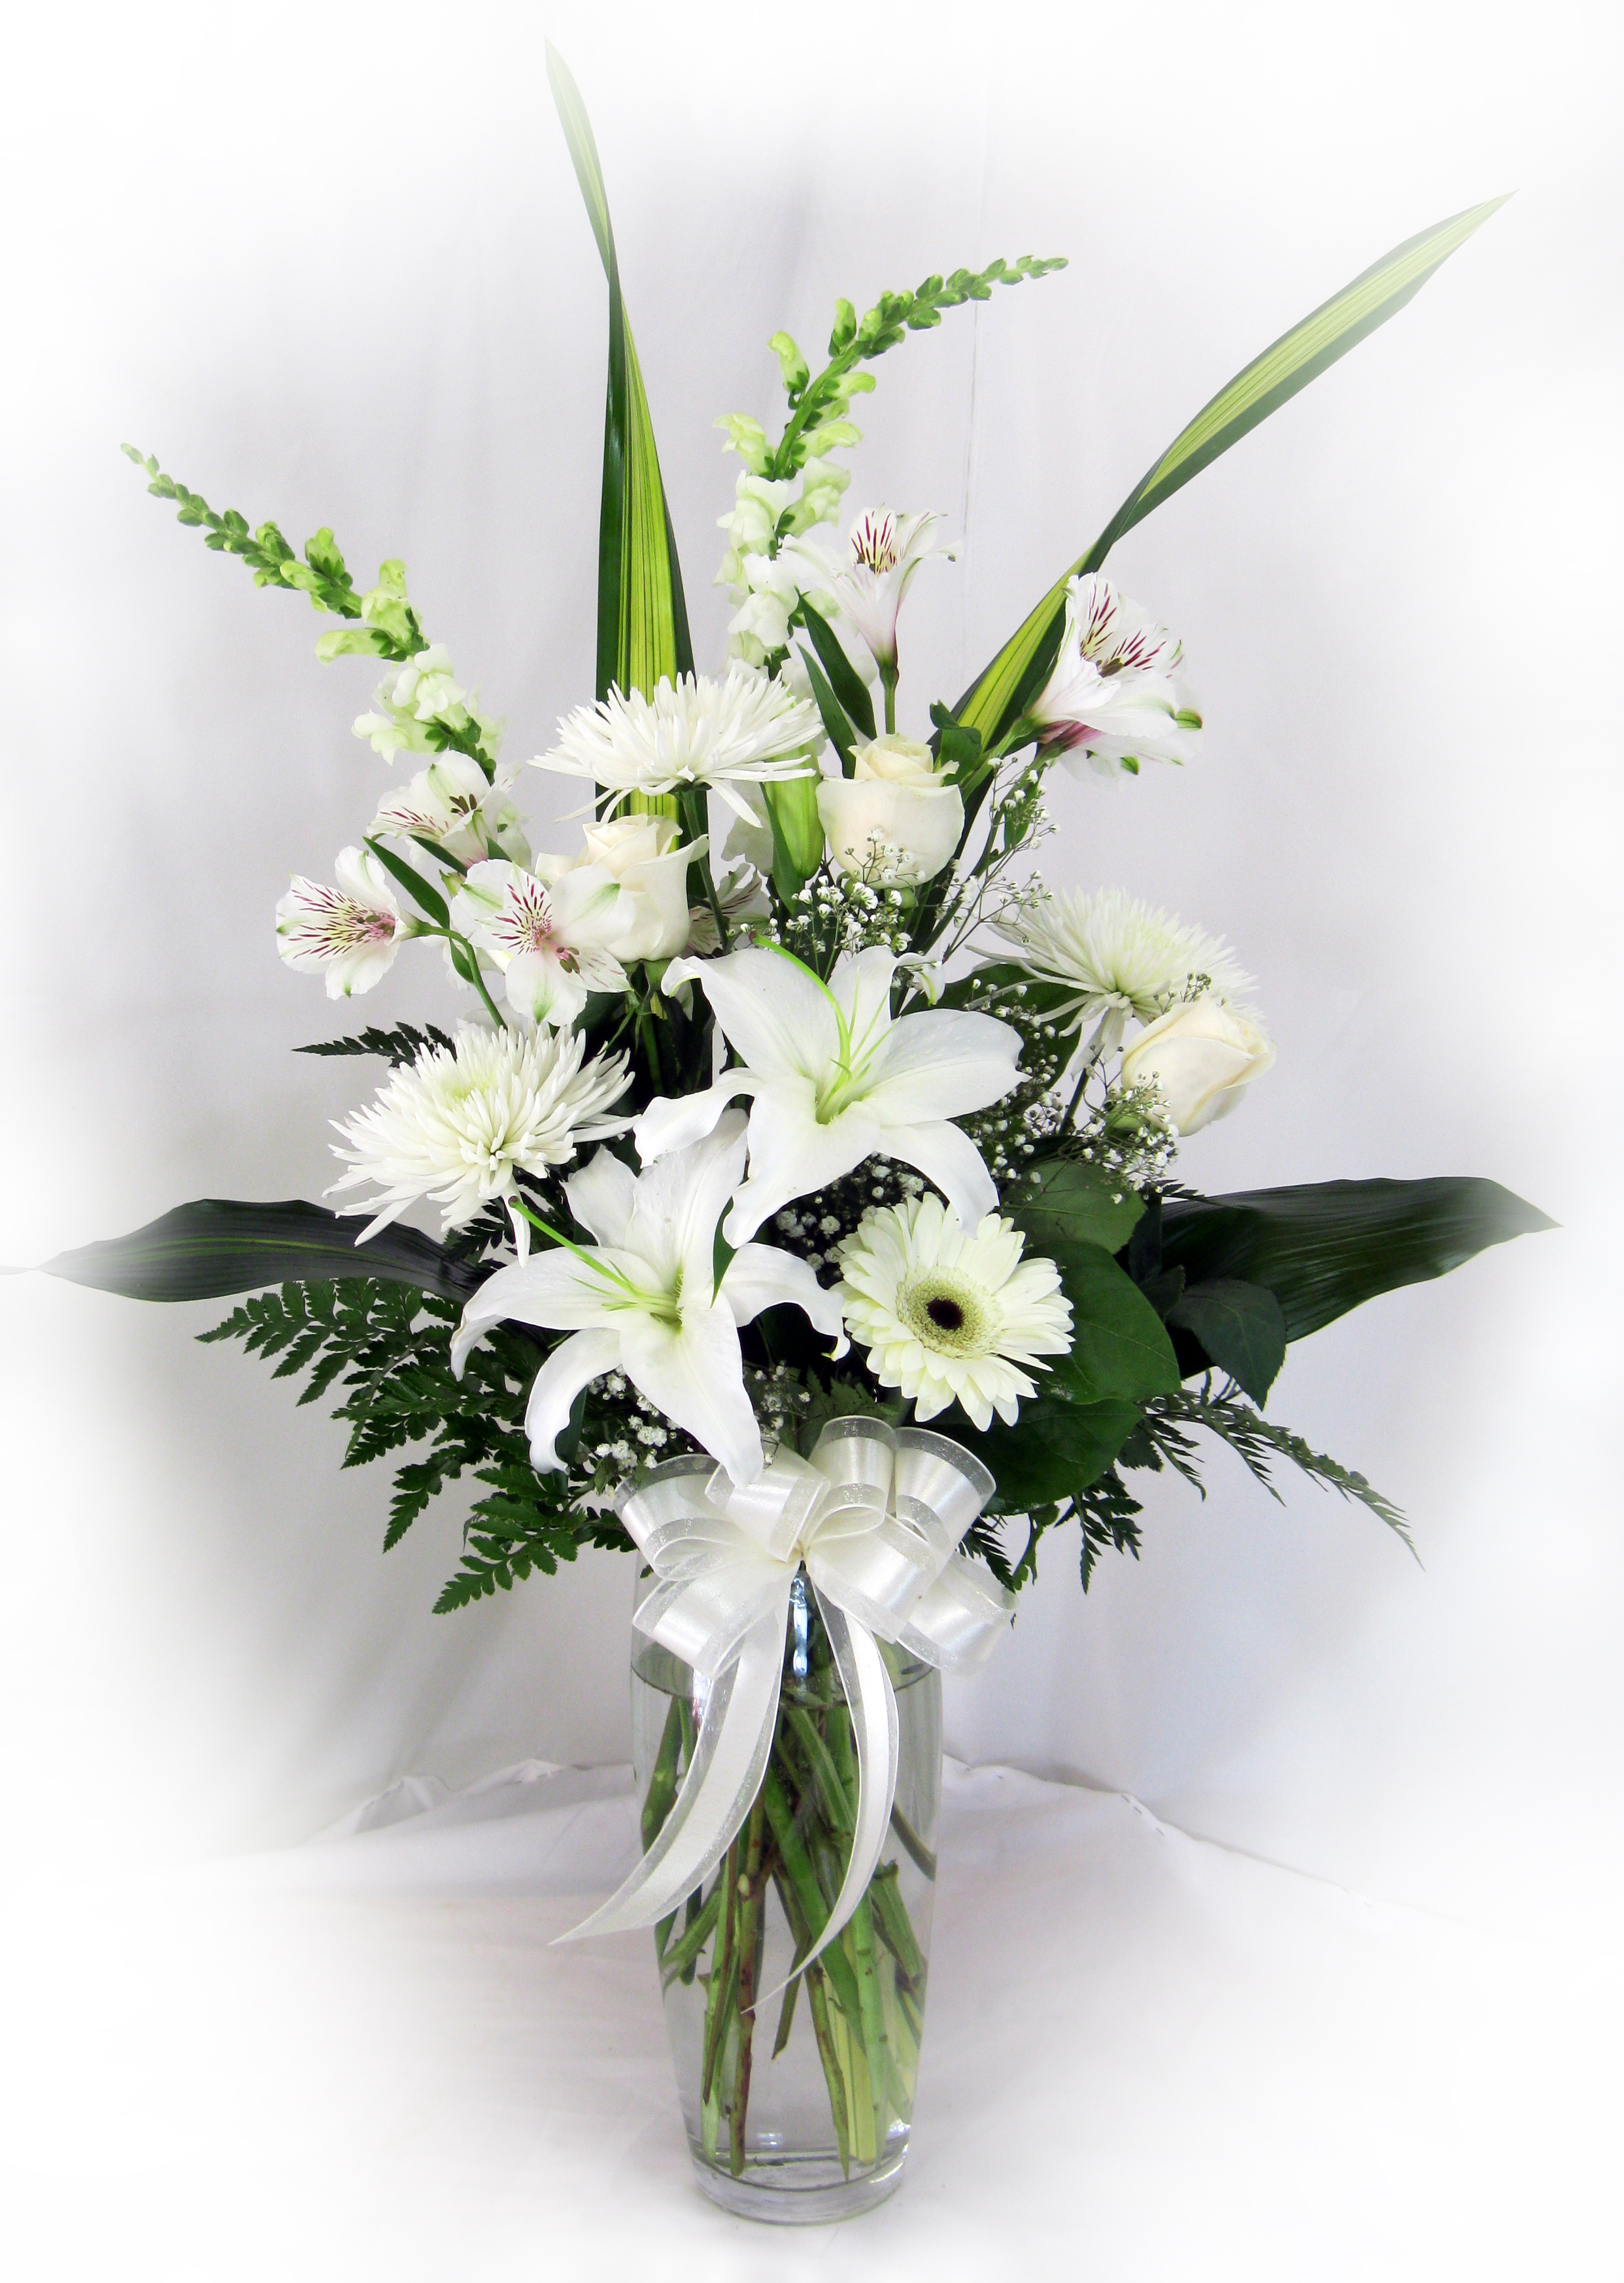  Vase  de fleurs  vari es blanches Maison Montcalm Fleuriste